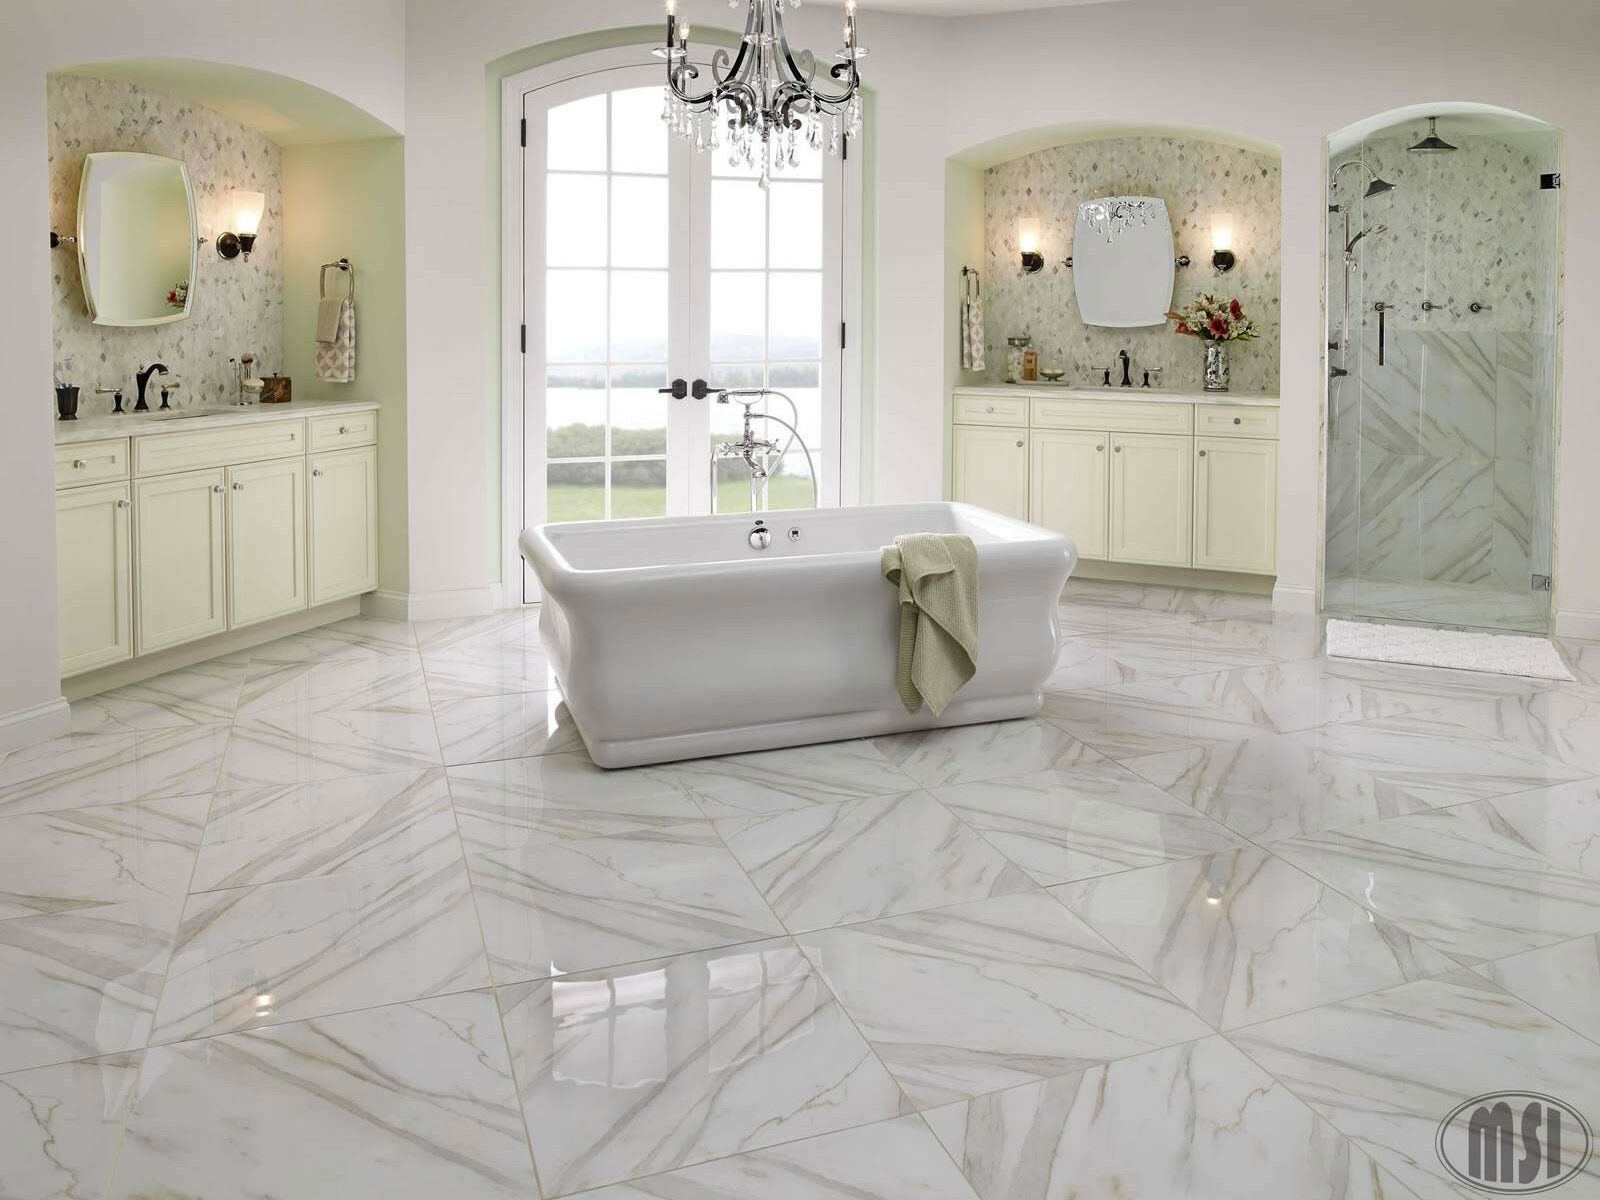 High gloss porcelain floor tiles